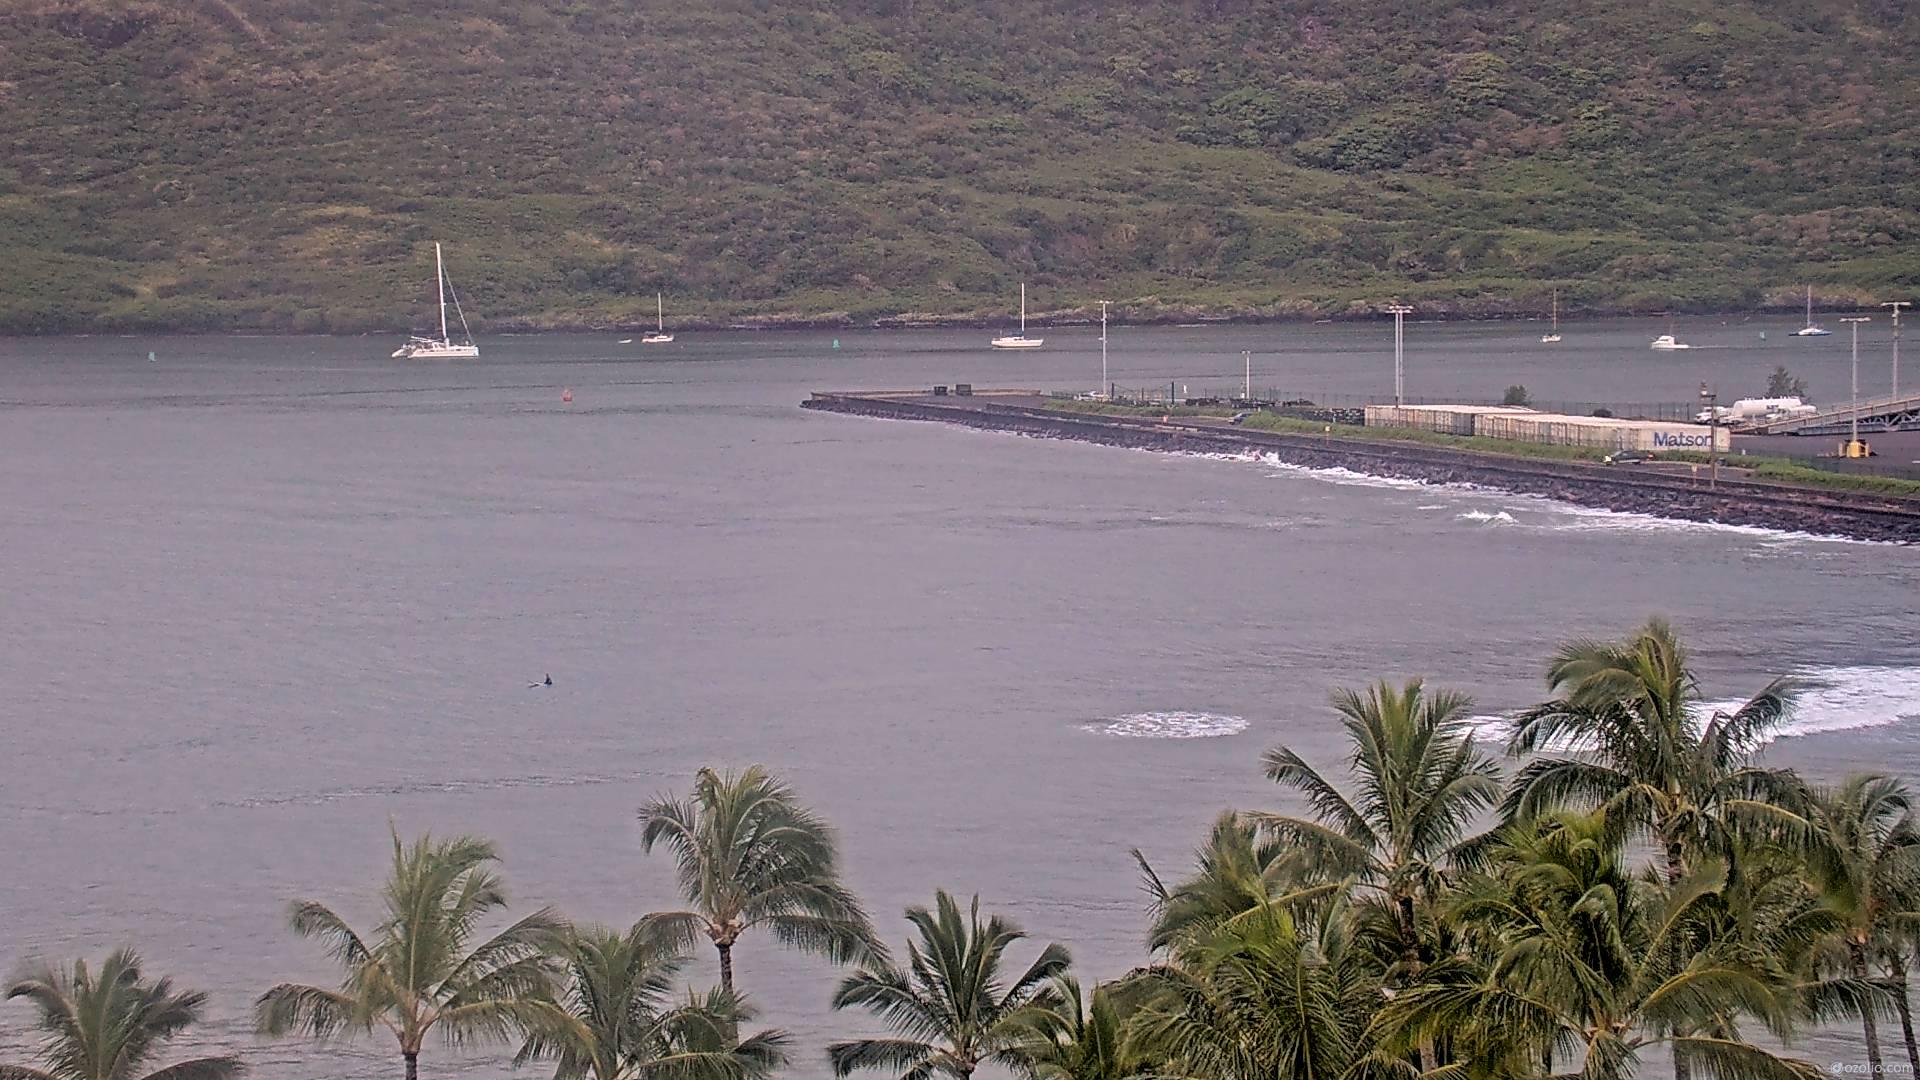 Lihue, Hawaii So. 06:14